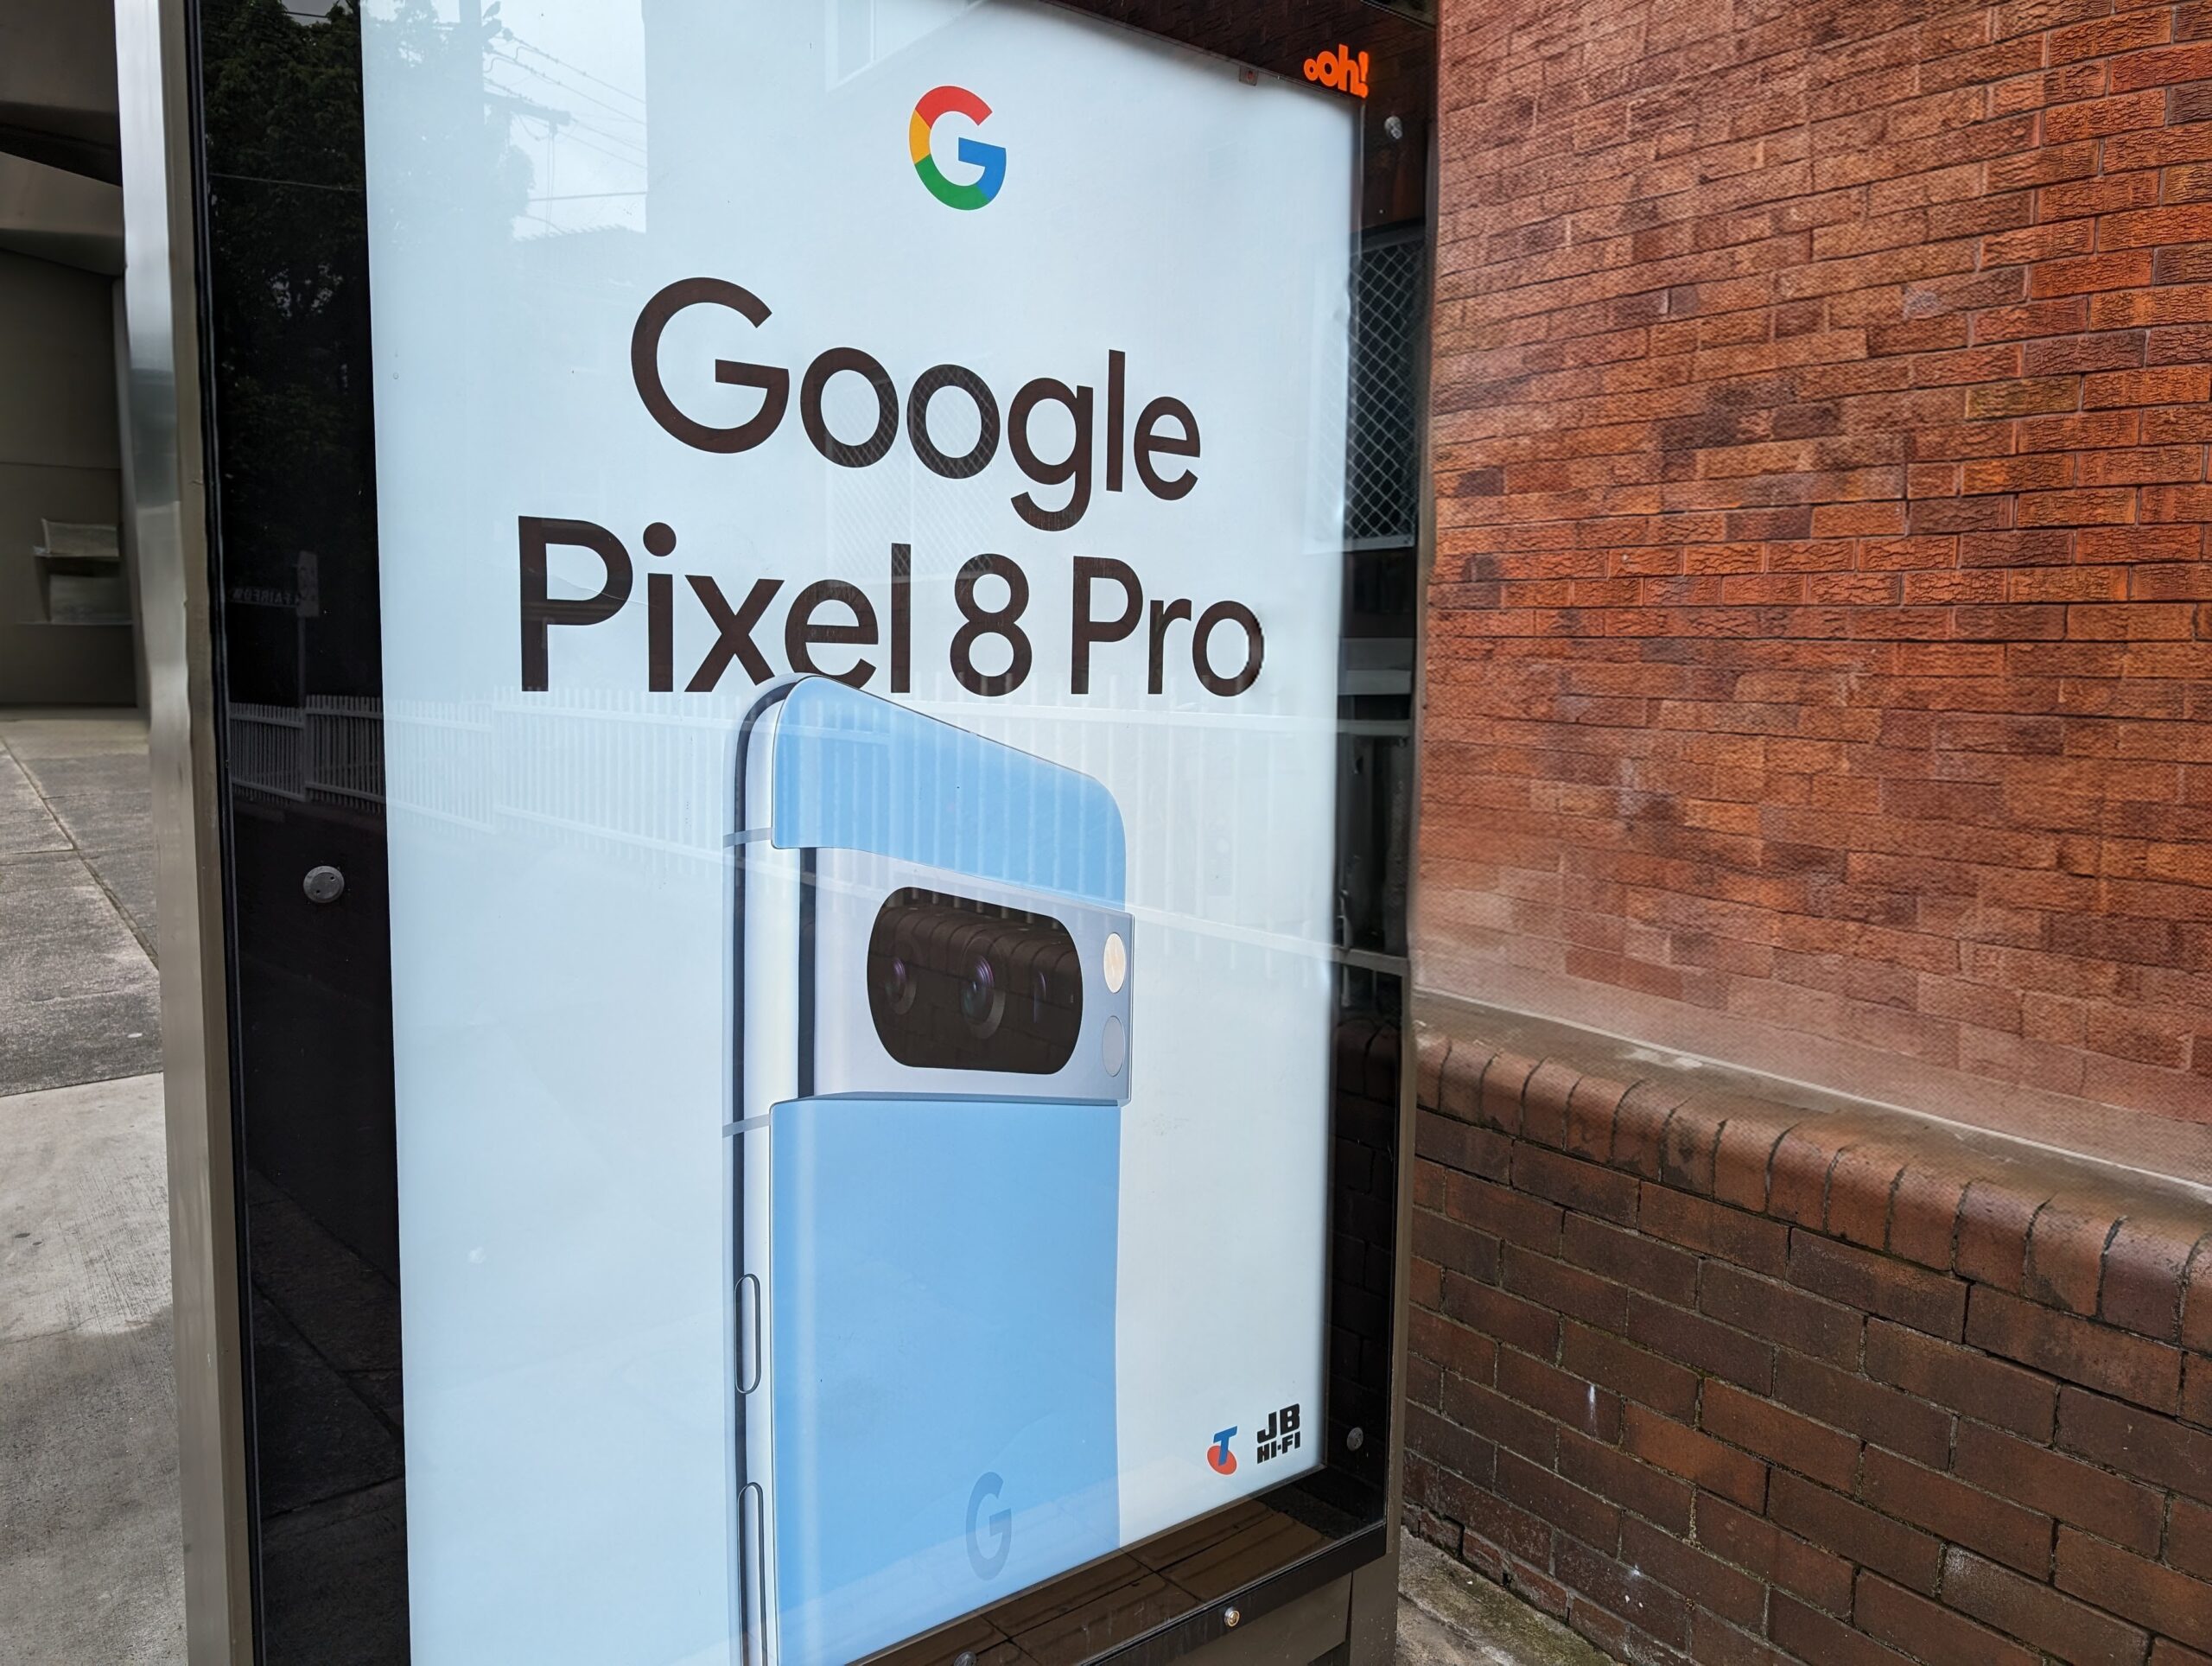 Google Pixel 8 Pro Magic Editor pour photos vous permet de rejeter la réalité et de la remplacer par vos propres modifications